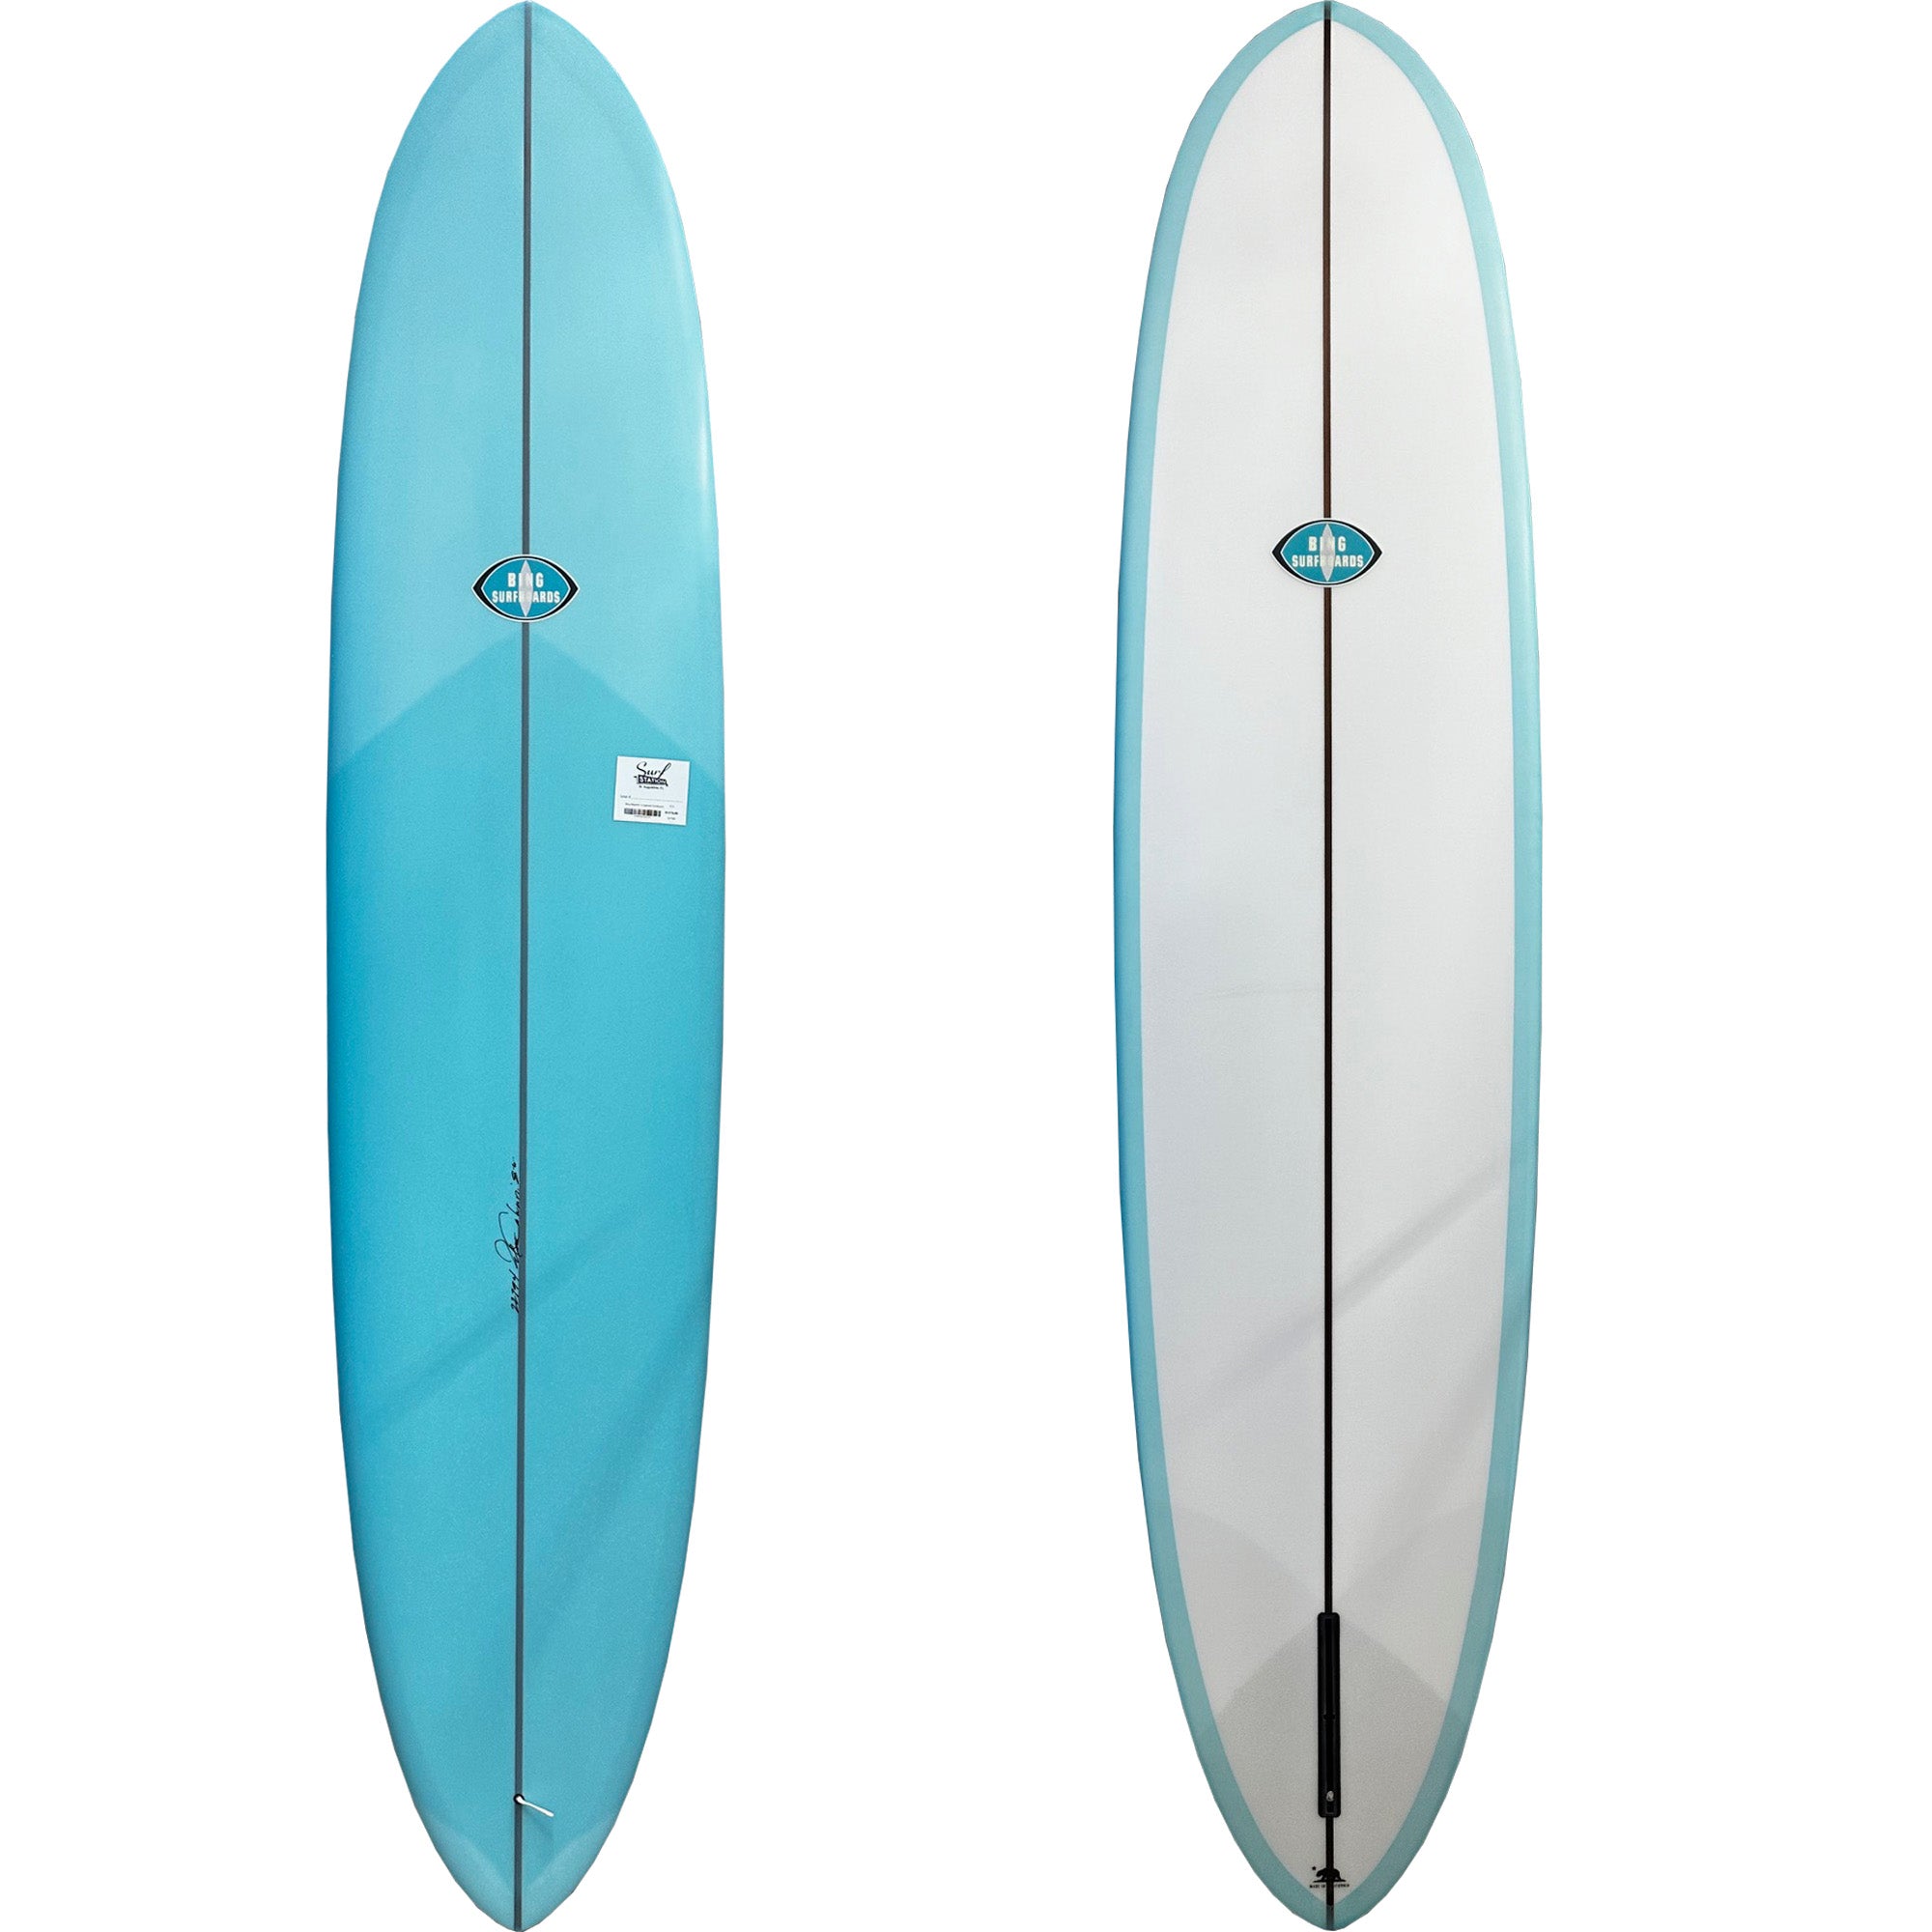 Bing Majestic 8'6 Longboard Surfboard